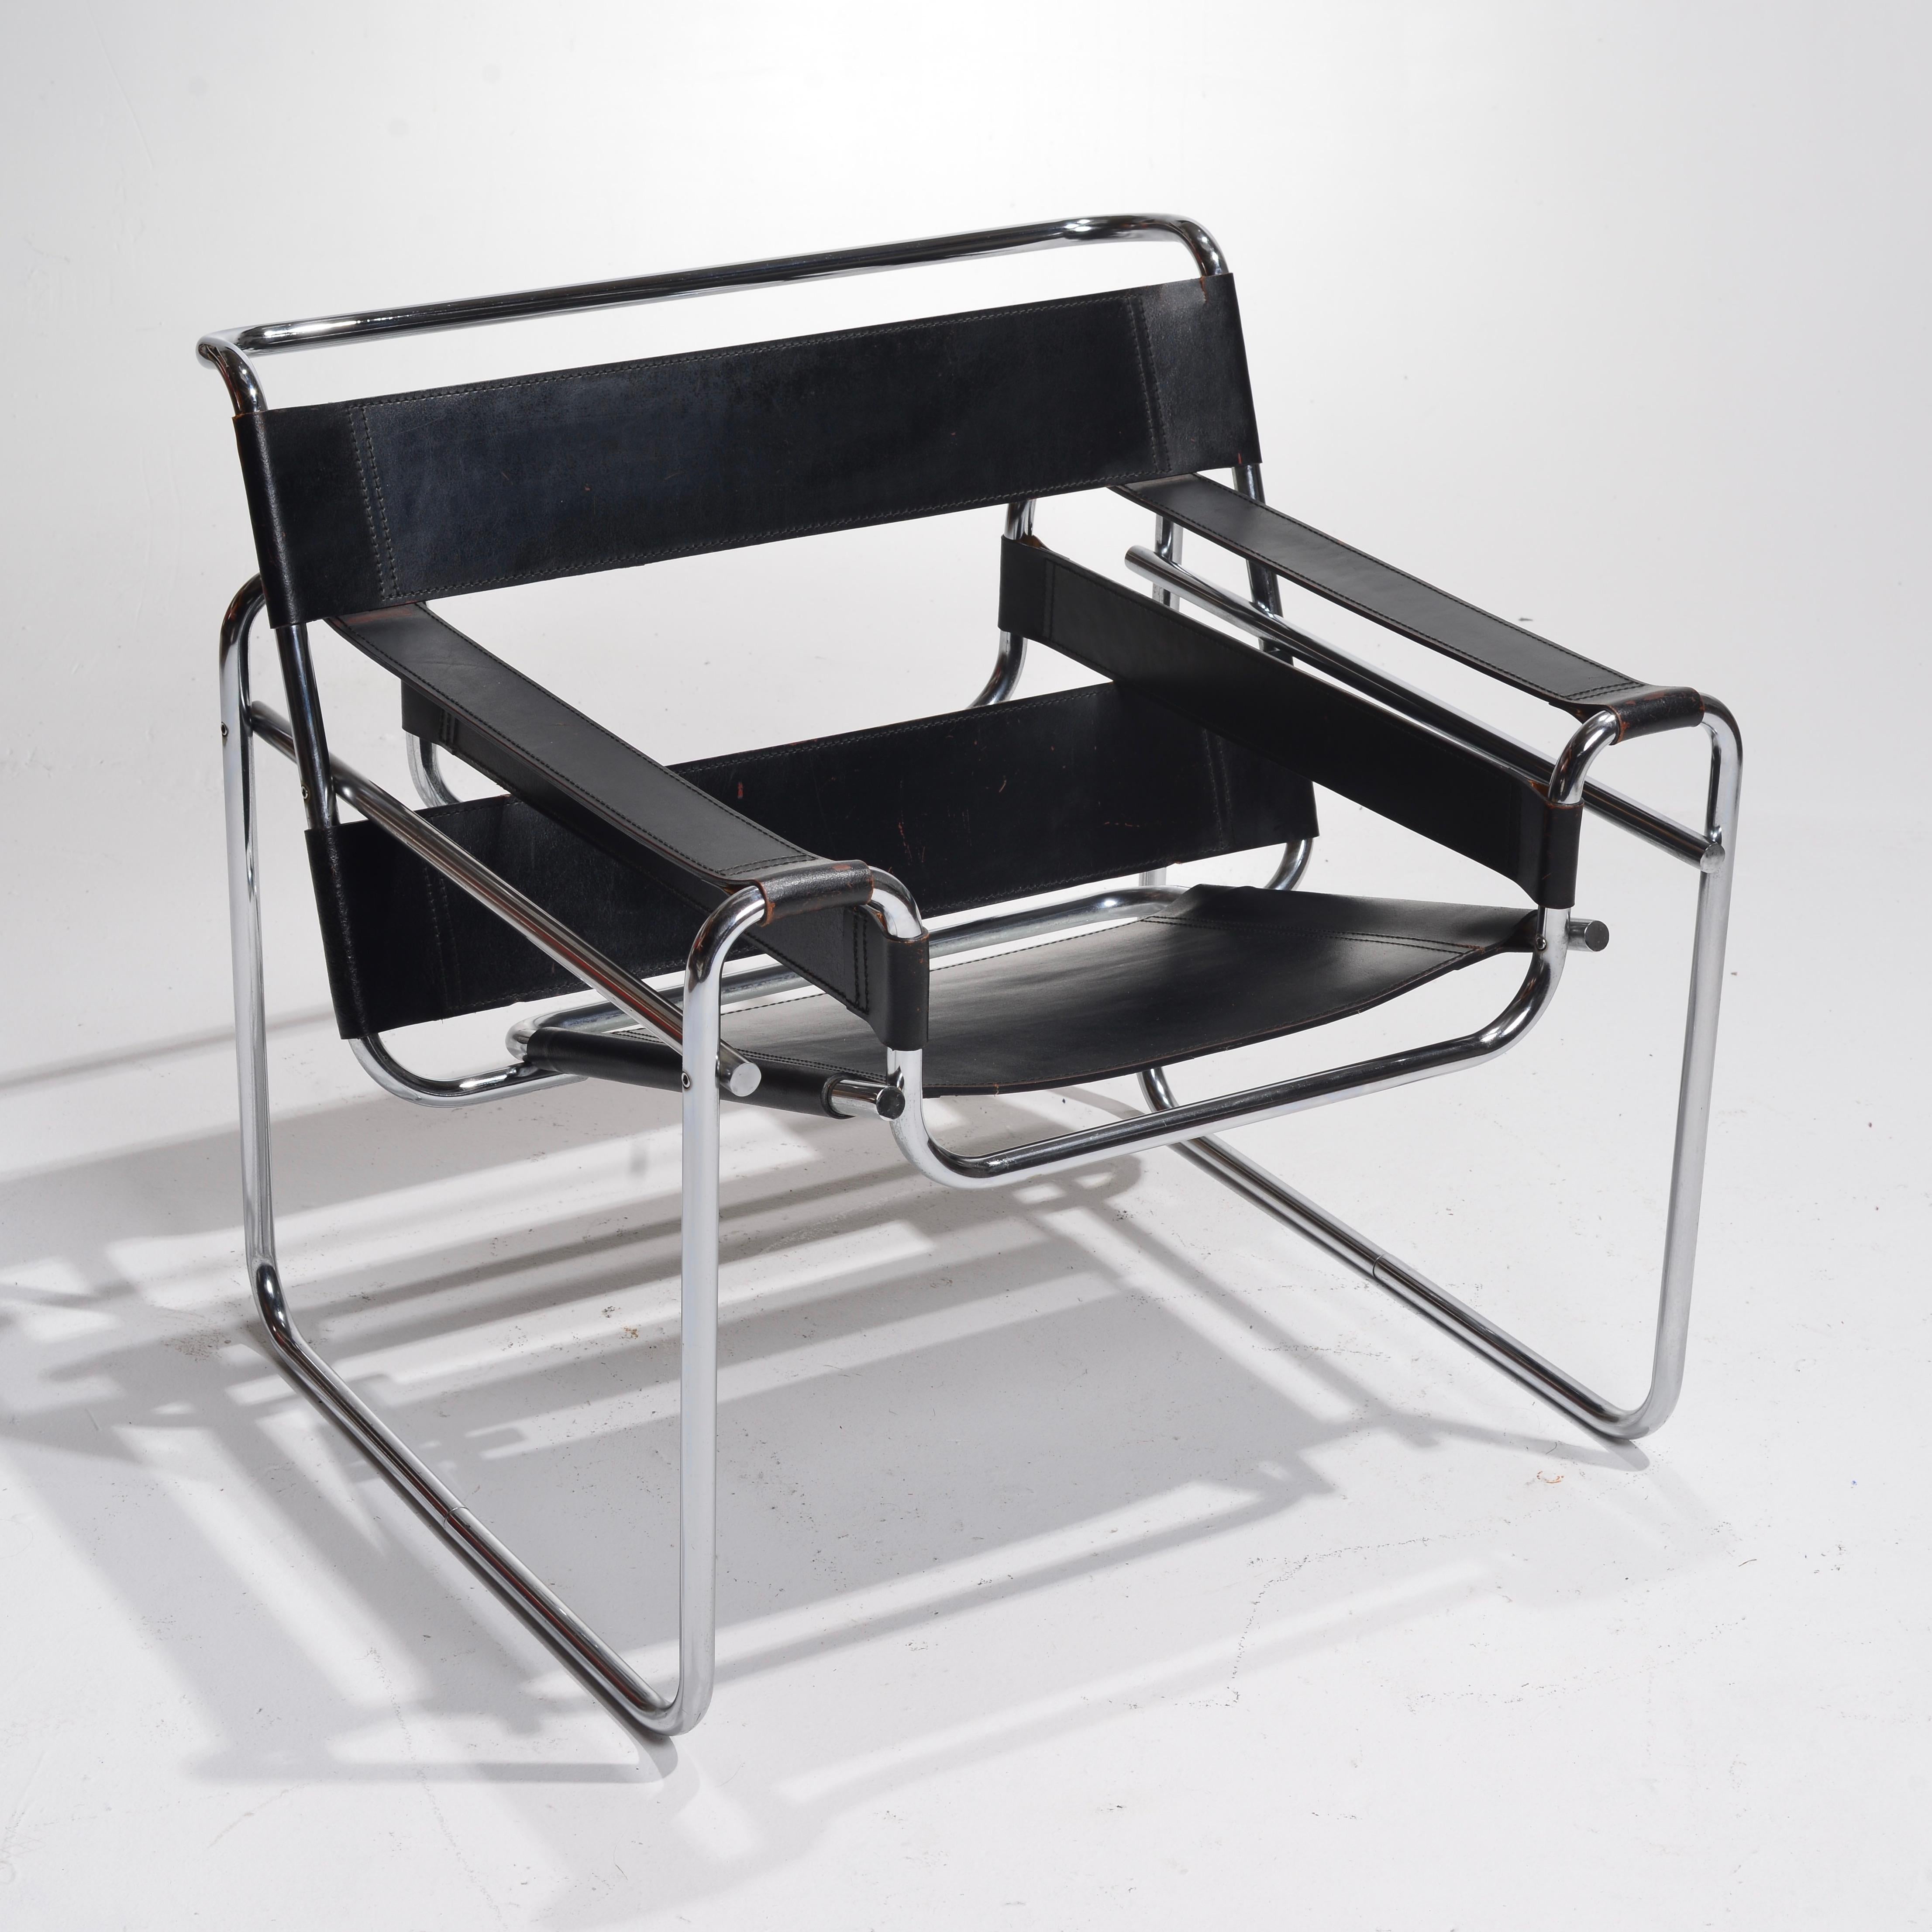 ntroducing the Knoll Wassily B3 Armchair by Marcel Breuer for Gavina - A Modern Classic from 1960

Der Knoll Wassily B3 Armchair, den der Visionär Marcel Breuer 1960 für Gavina entwarf, ist ein ikonisches Möbelstück, das für die bahnbrechenden